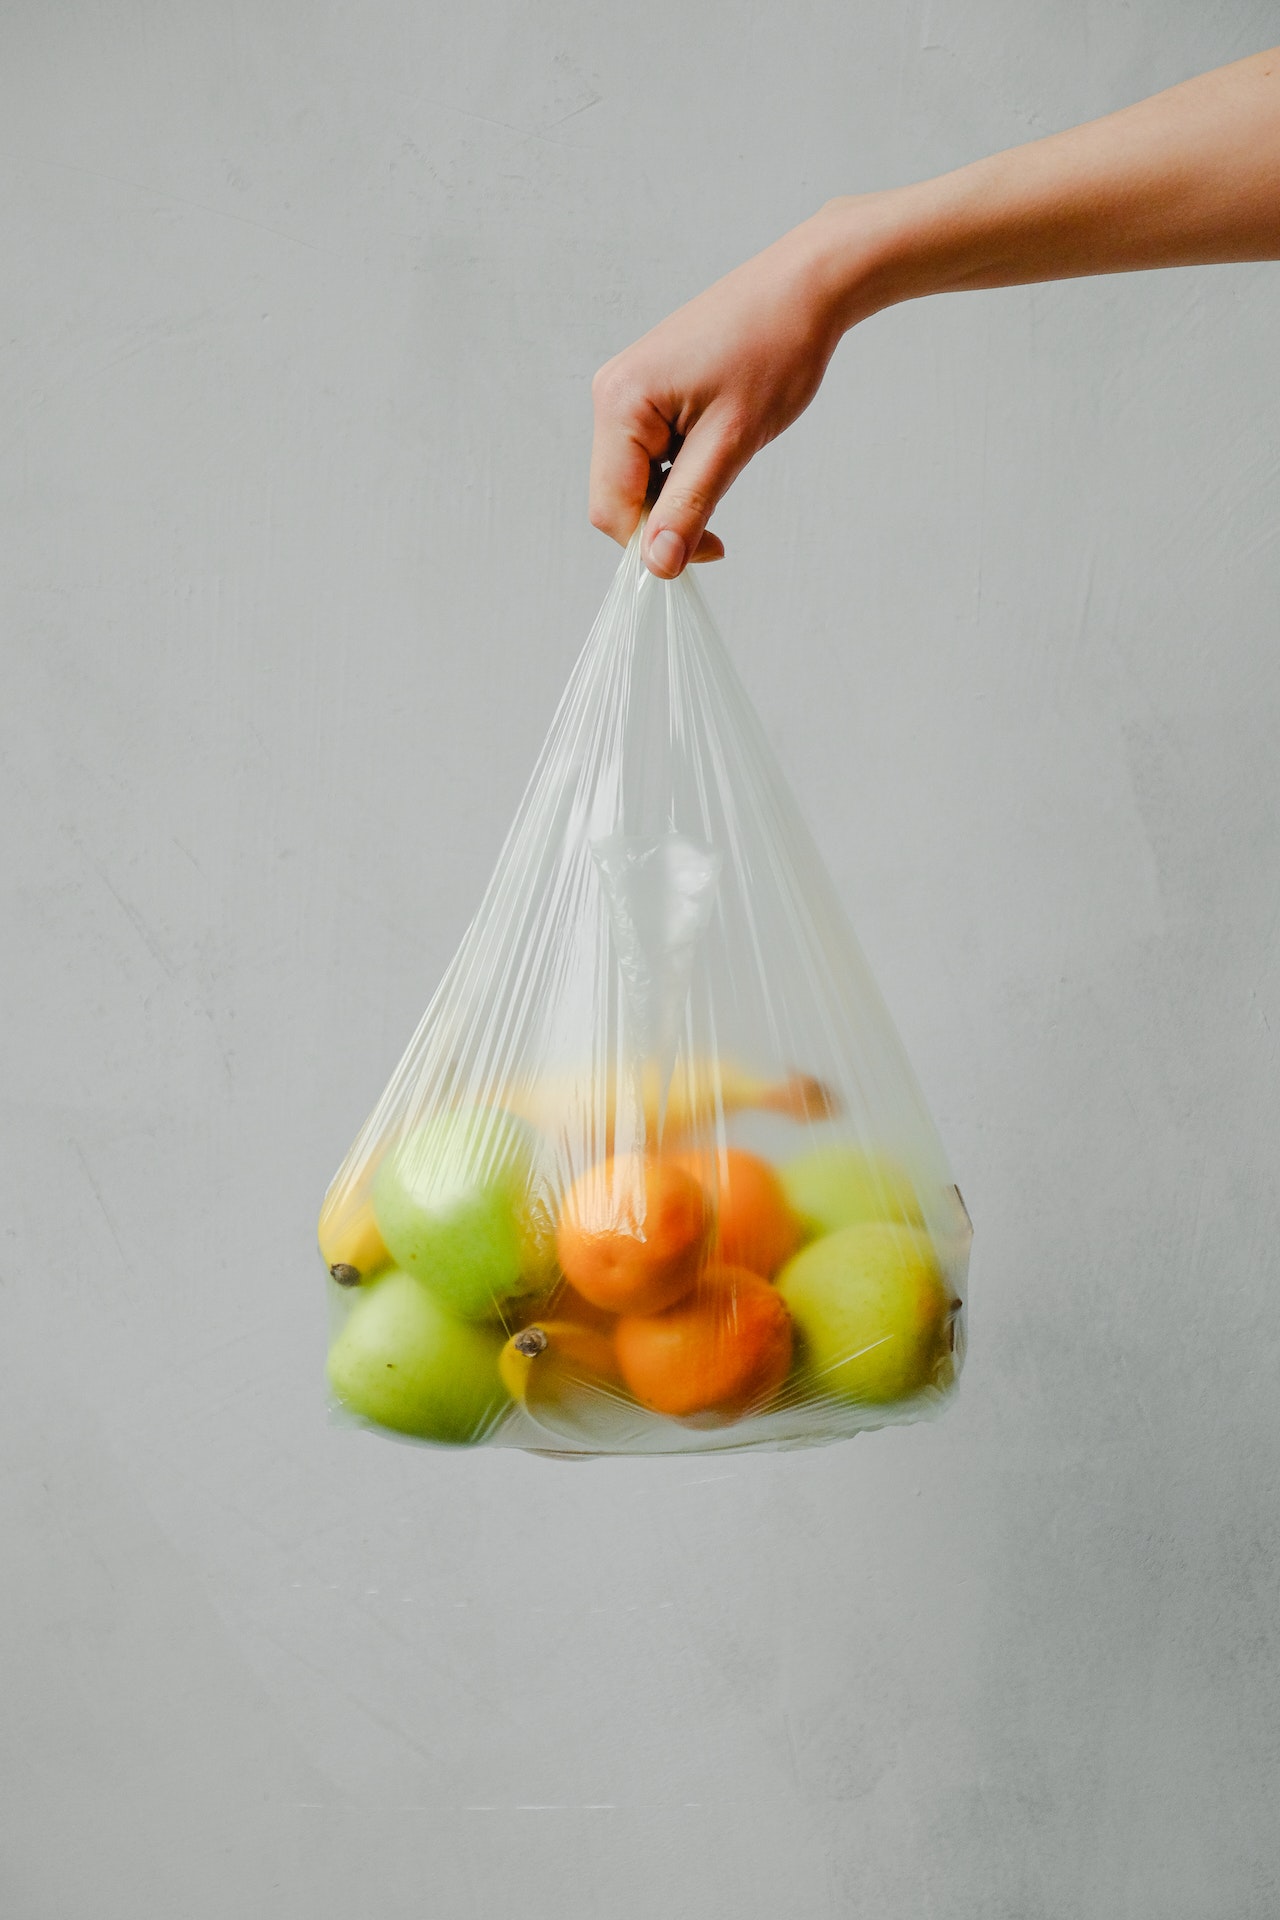 fruit-plastic-containers - Plastic Oceans International